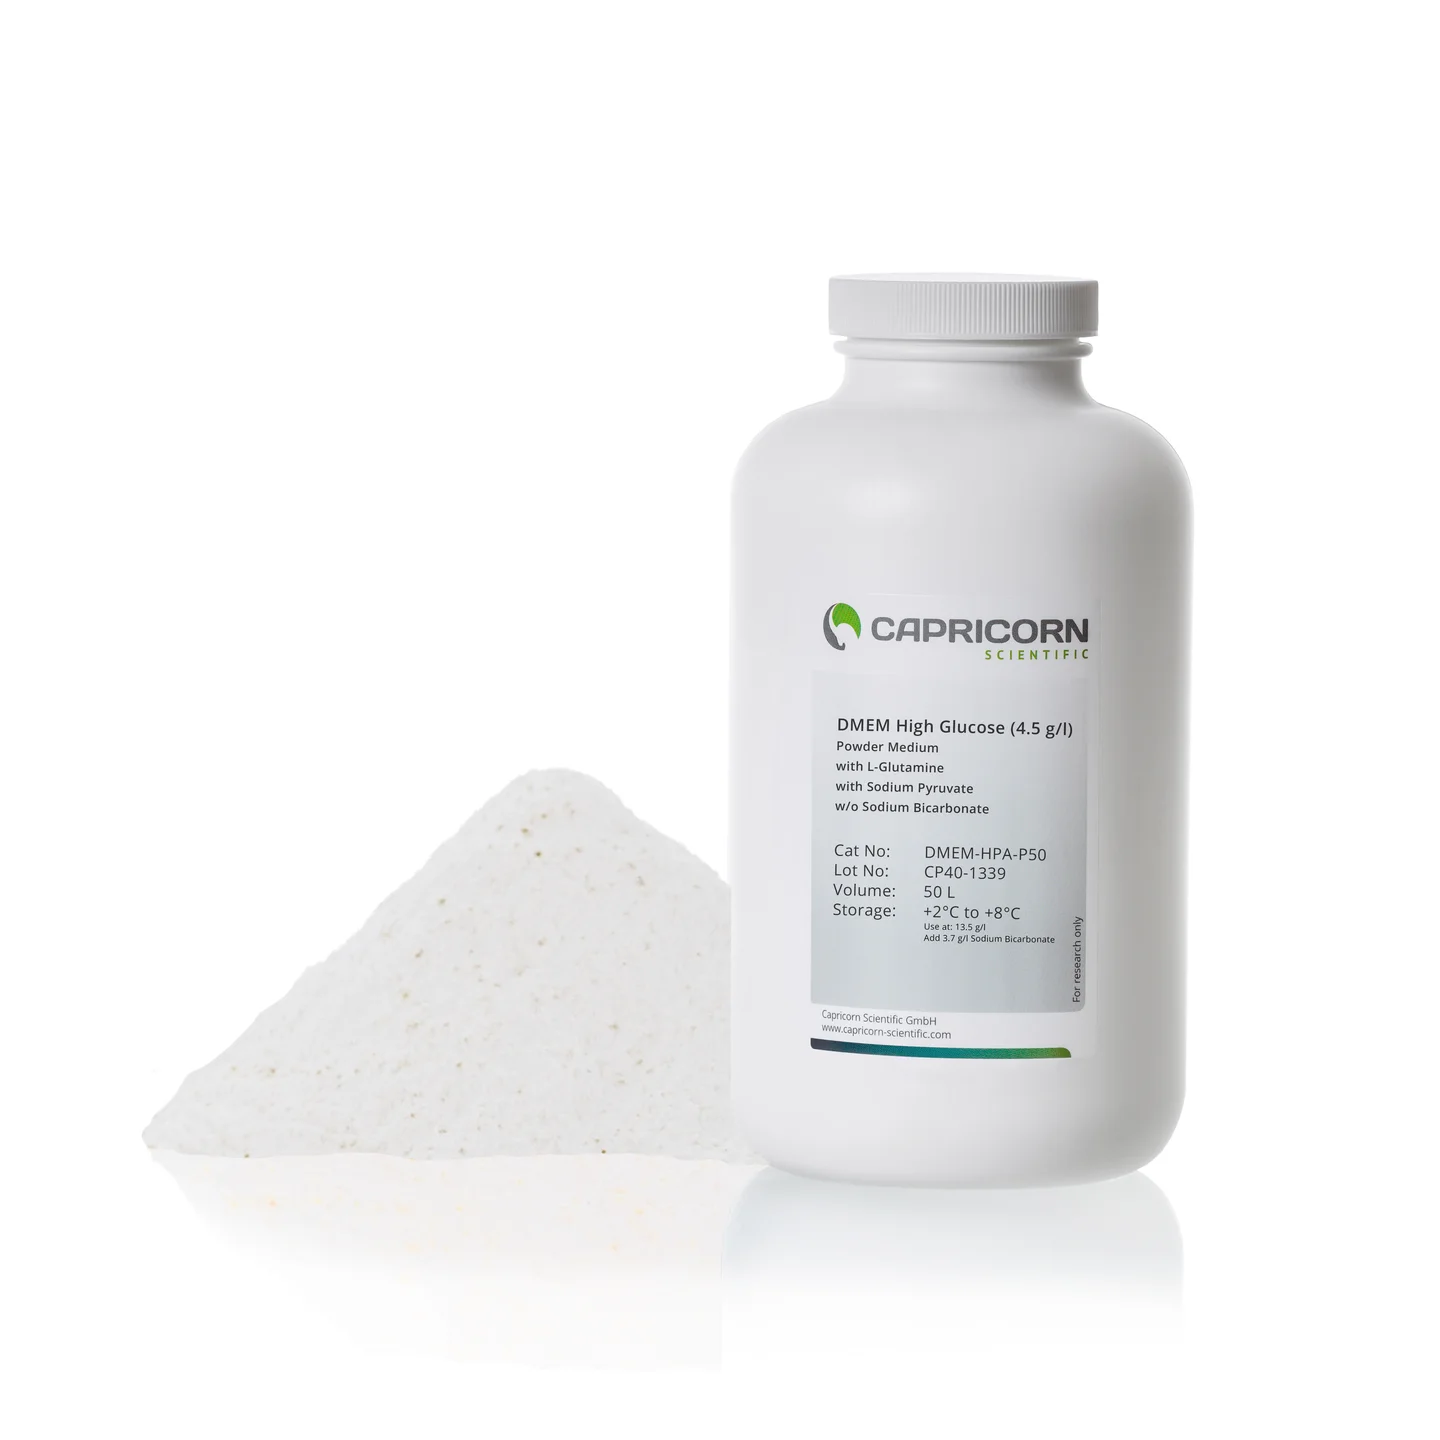 Môi trường DMEM dạng bột, Glucose nồng độ cao (4.5 g/l), chứa L-Glutamine, Sodium Pyruvate, không chứa Sodium Bicarbonate